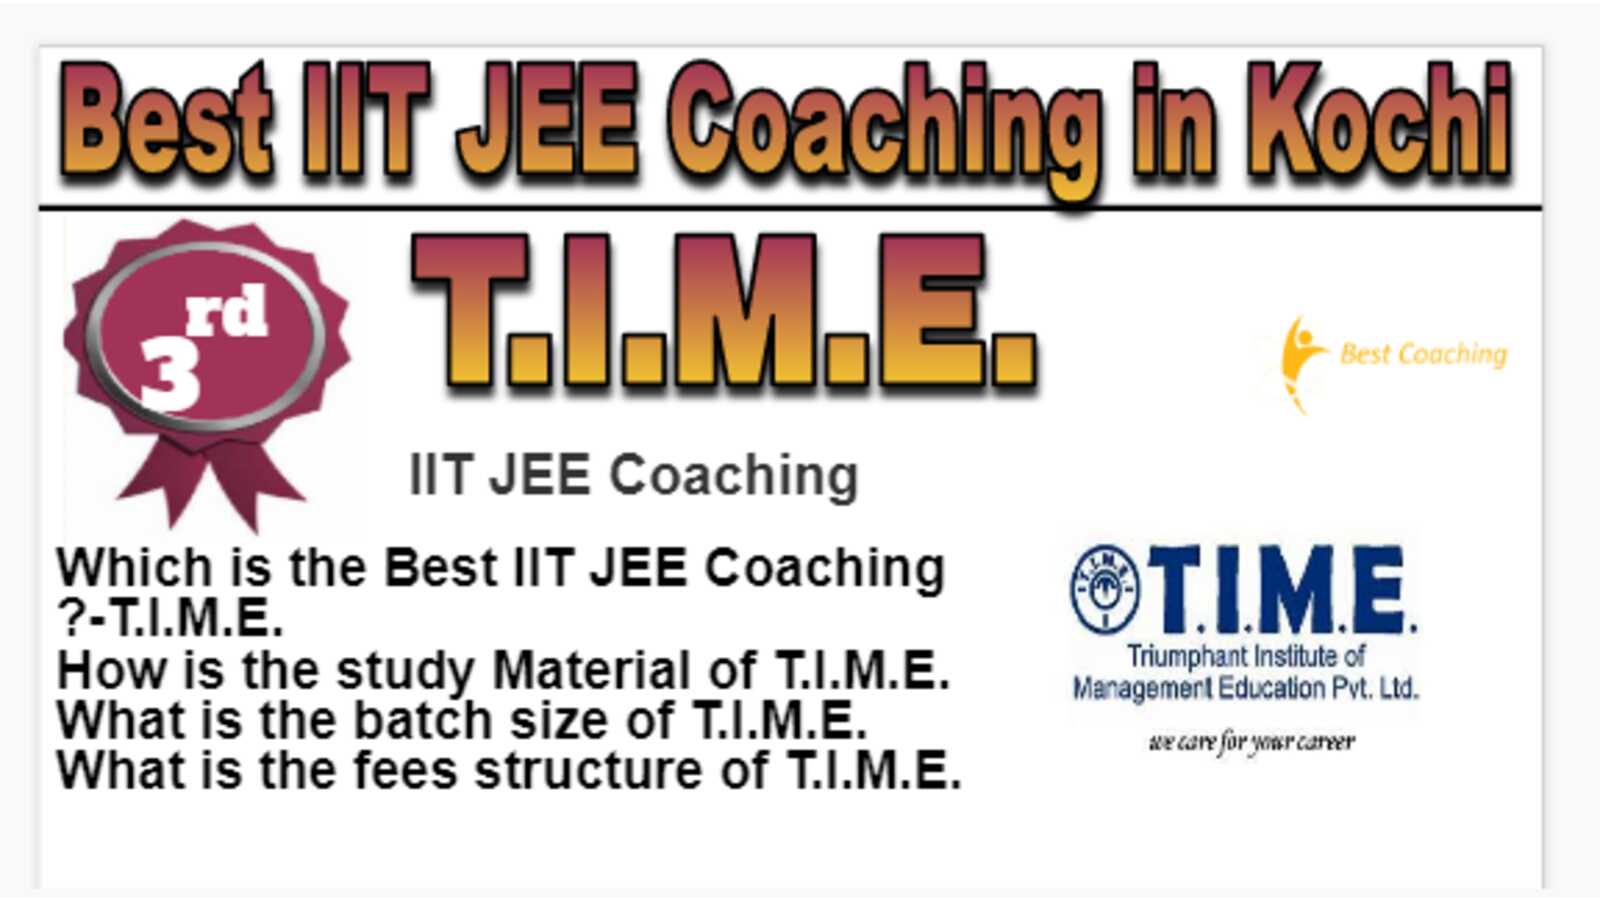 Rank 3 Best IIT JEE Coaching in Kochi